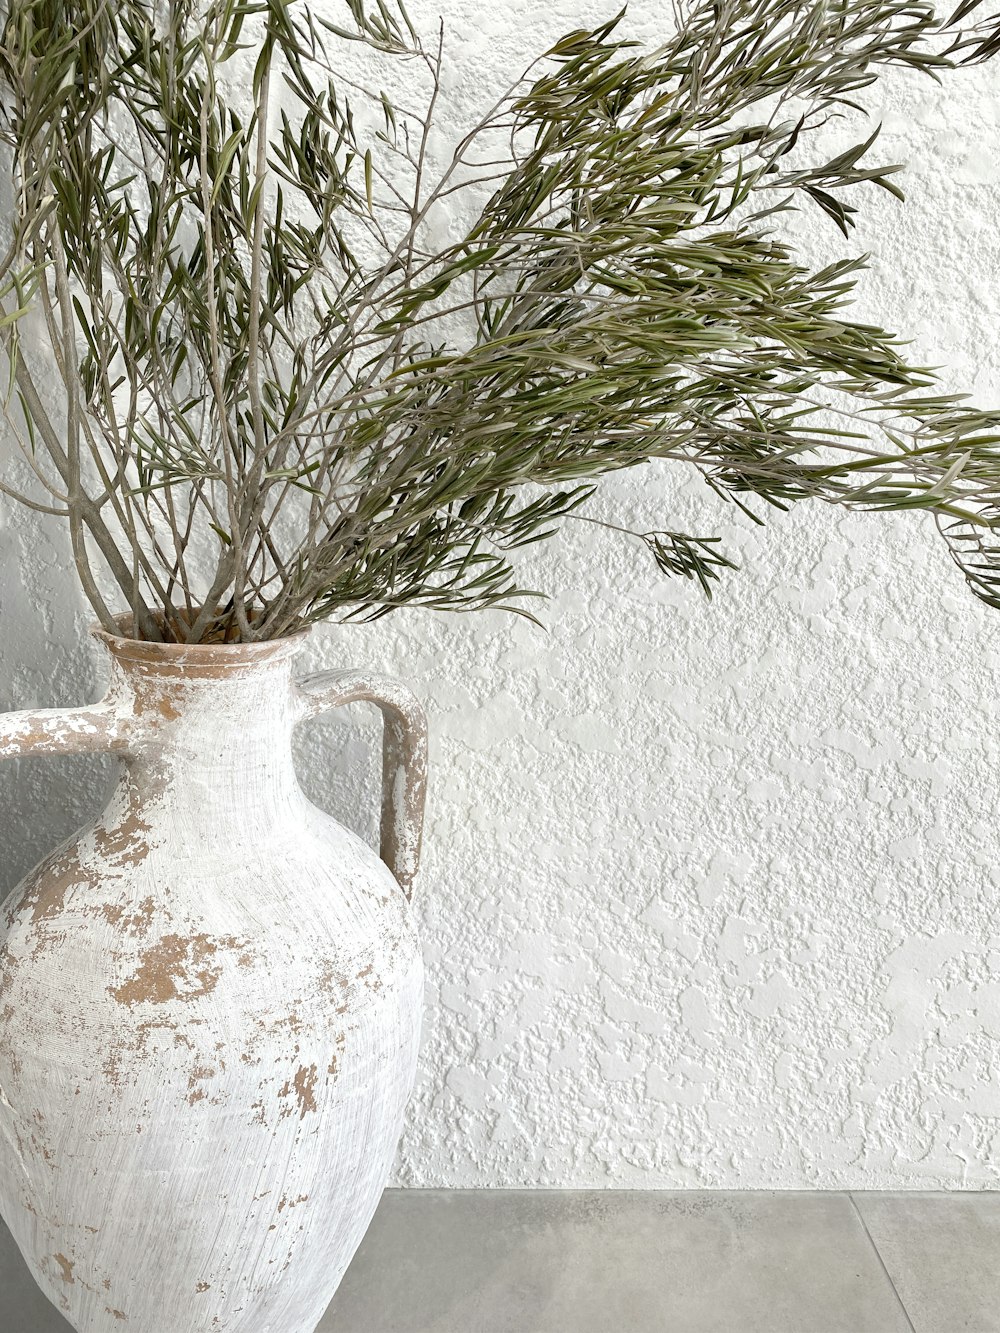 green plant in white ceramic vase